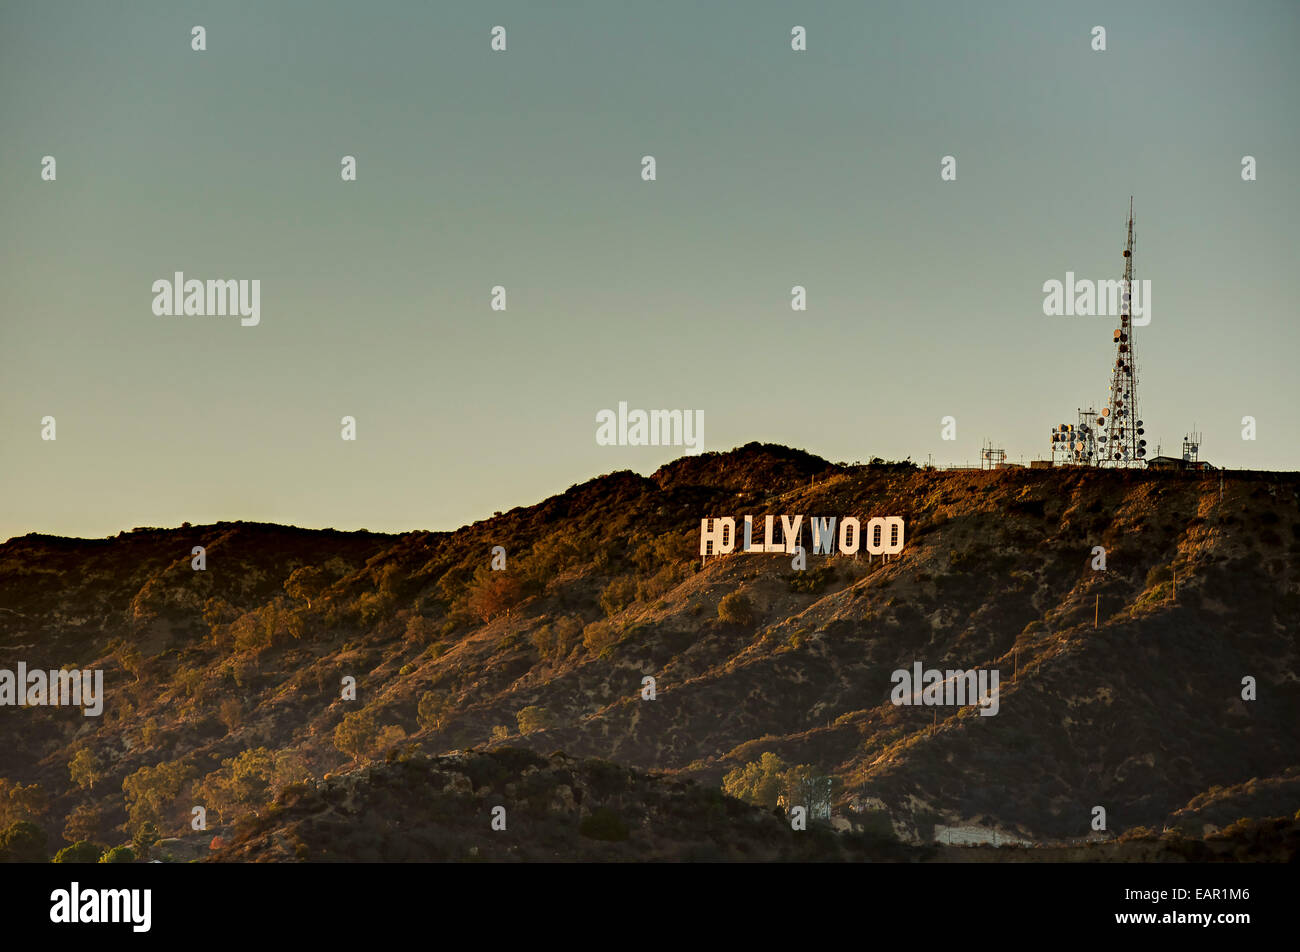 La famosa insegna di Hollywood landmark è visto dalla Griffith Observatory di Los Angeles, in California al crepuscolo. Foto Stock